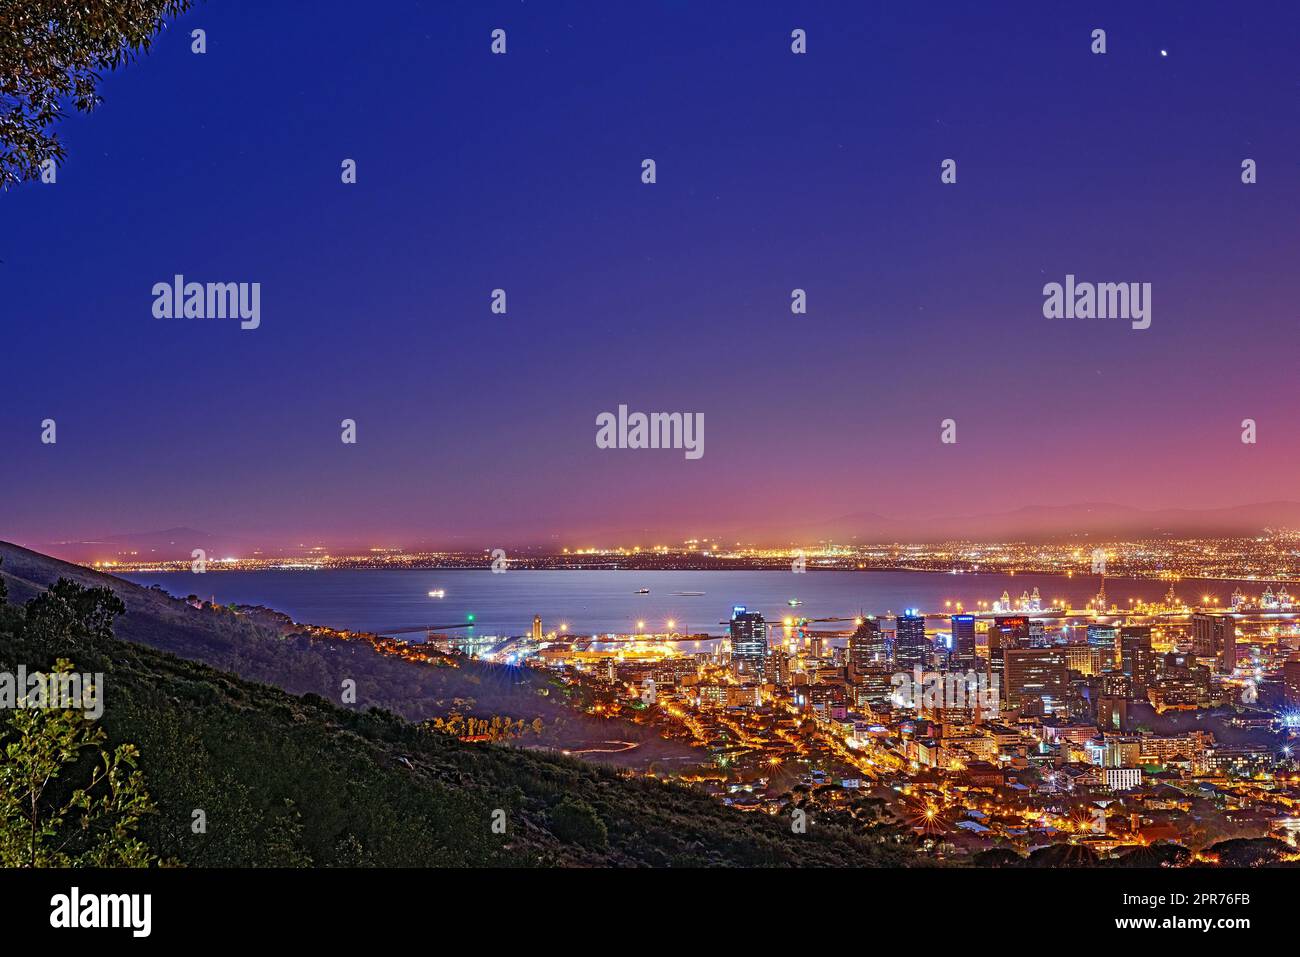 Signal Hill au Cap Afrique du Sud avec espace publicitaire sur fond de ciel sombre de nuit et la vue d'une ville côtière. Paysage panoramique pittoresque de lumières illuminant un horizon urbain le long de la mer Banque D'Images